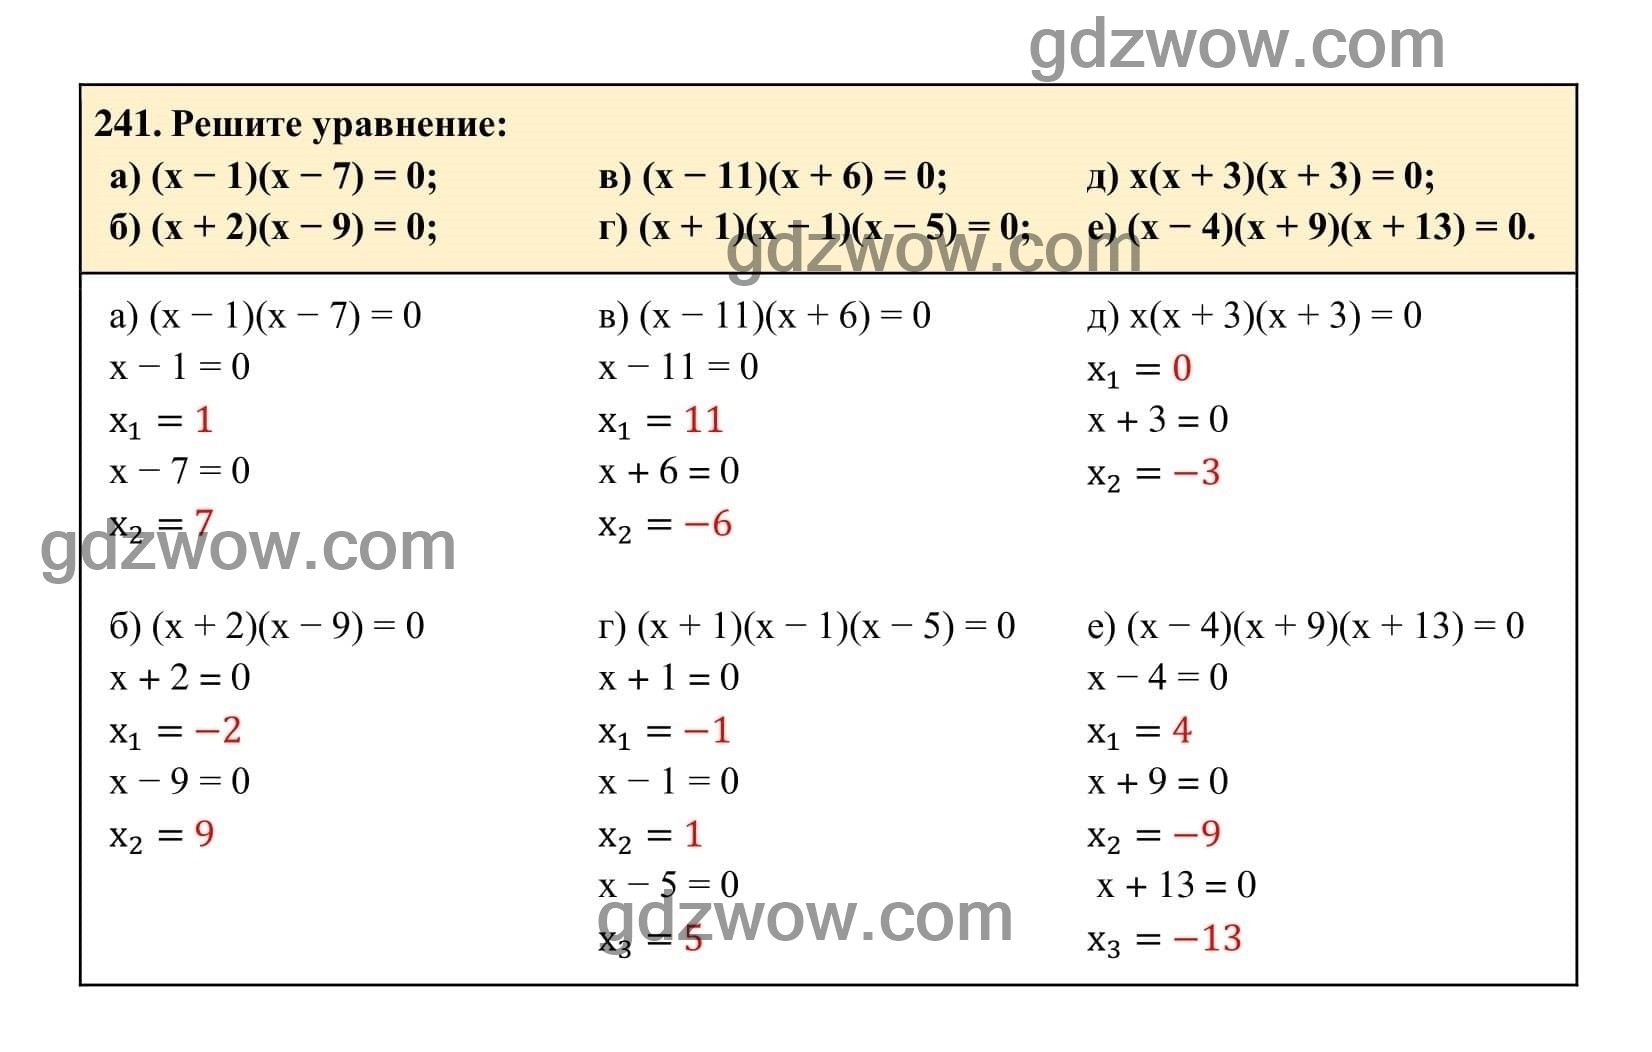 Упражнение 241 - ГДЗ по Алгебре 7 класс Учебник Макарычев (решебник) - GDZwow